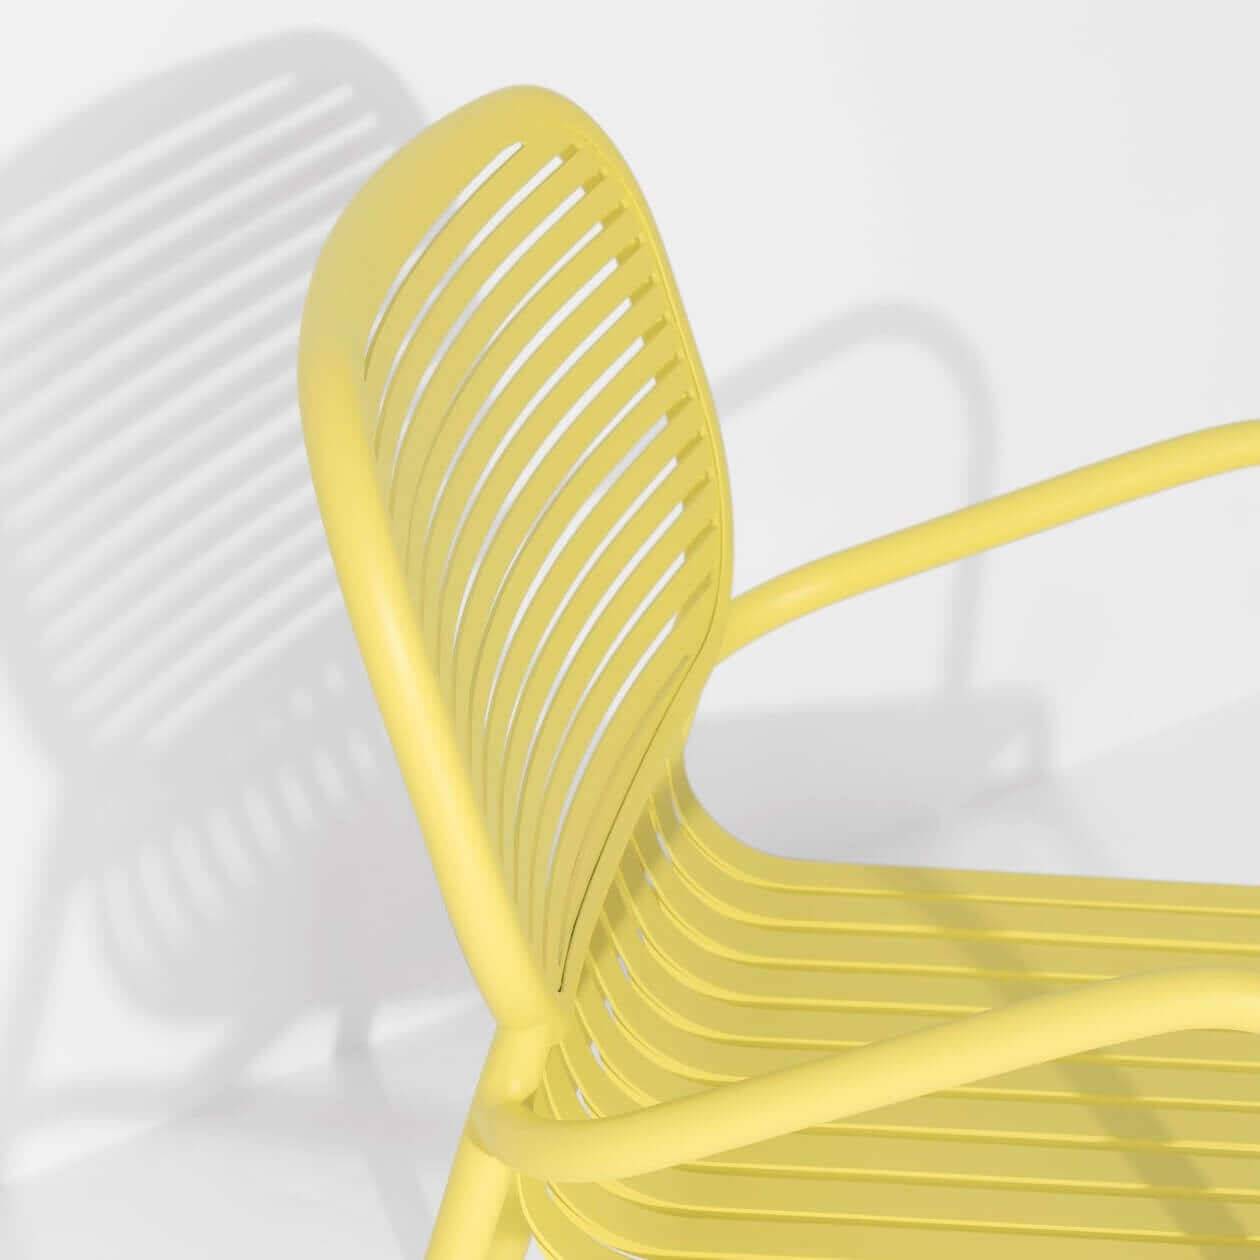 Week-End Garten Lounger in Yellow präsentiert im Onlineshop von KAQTU Design AG. Outdoor-Sessel mit Armlehnen ist von Petite Friture